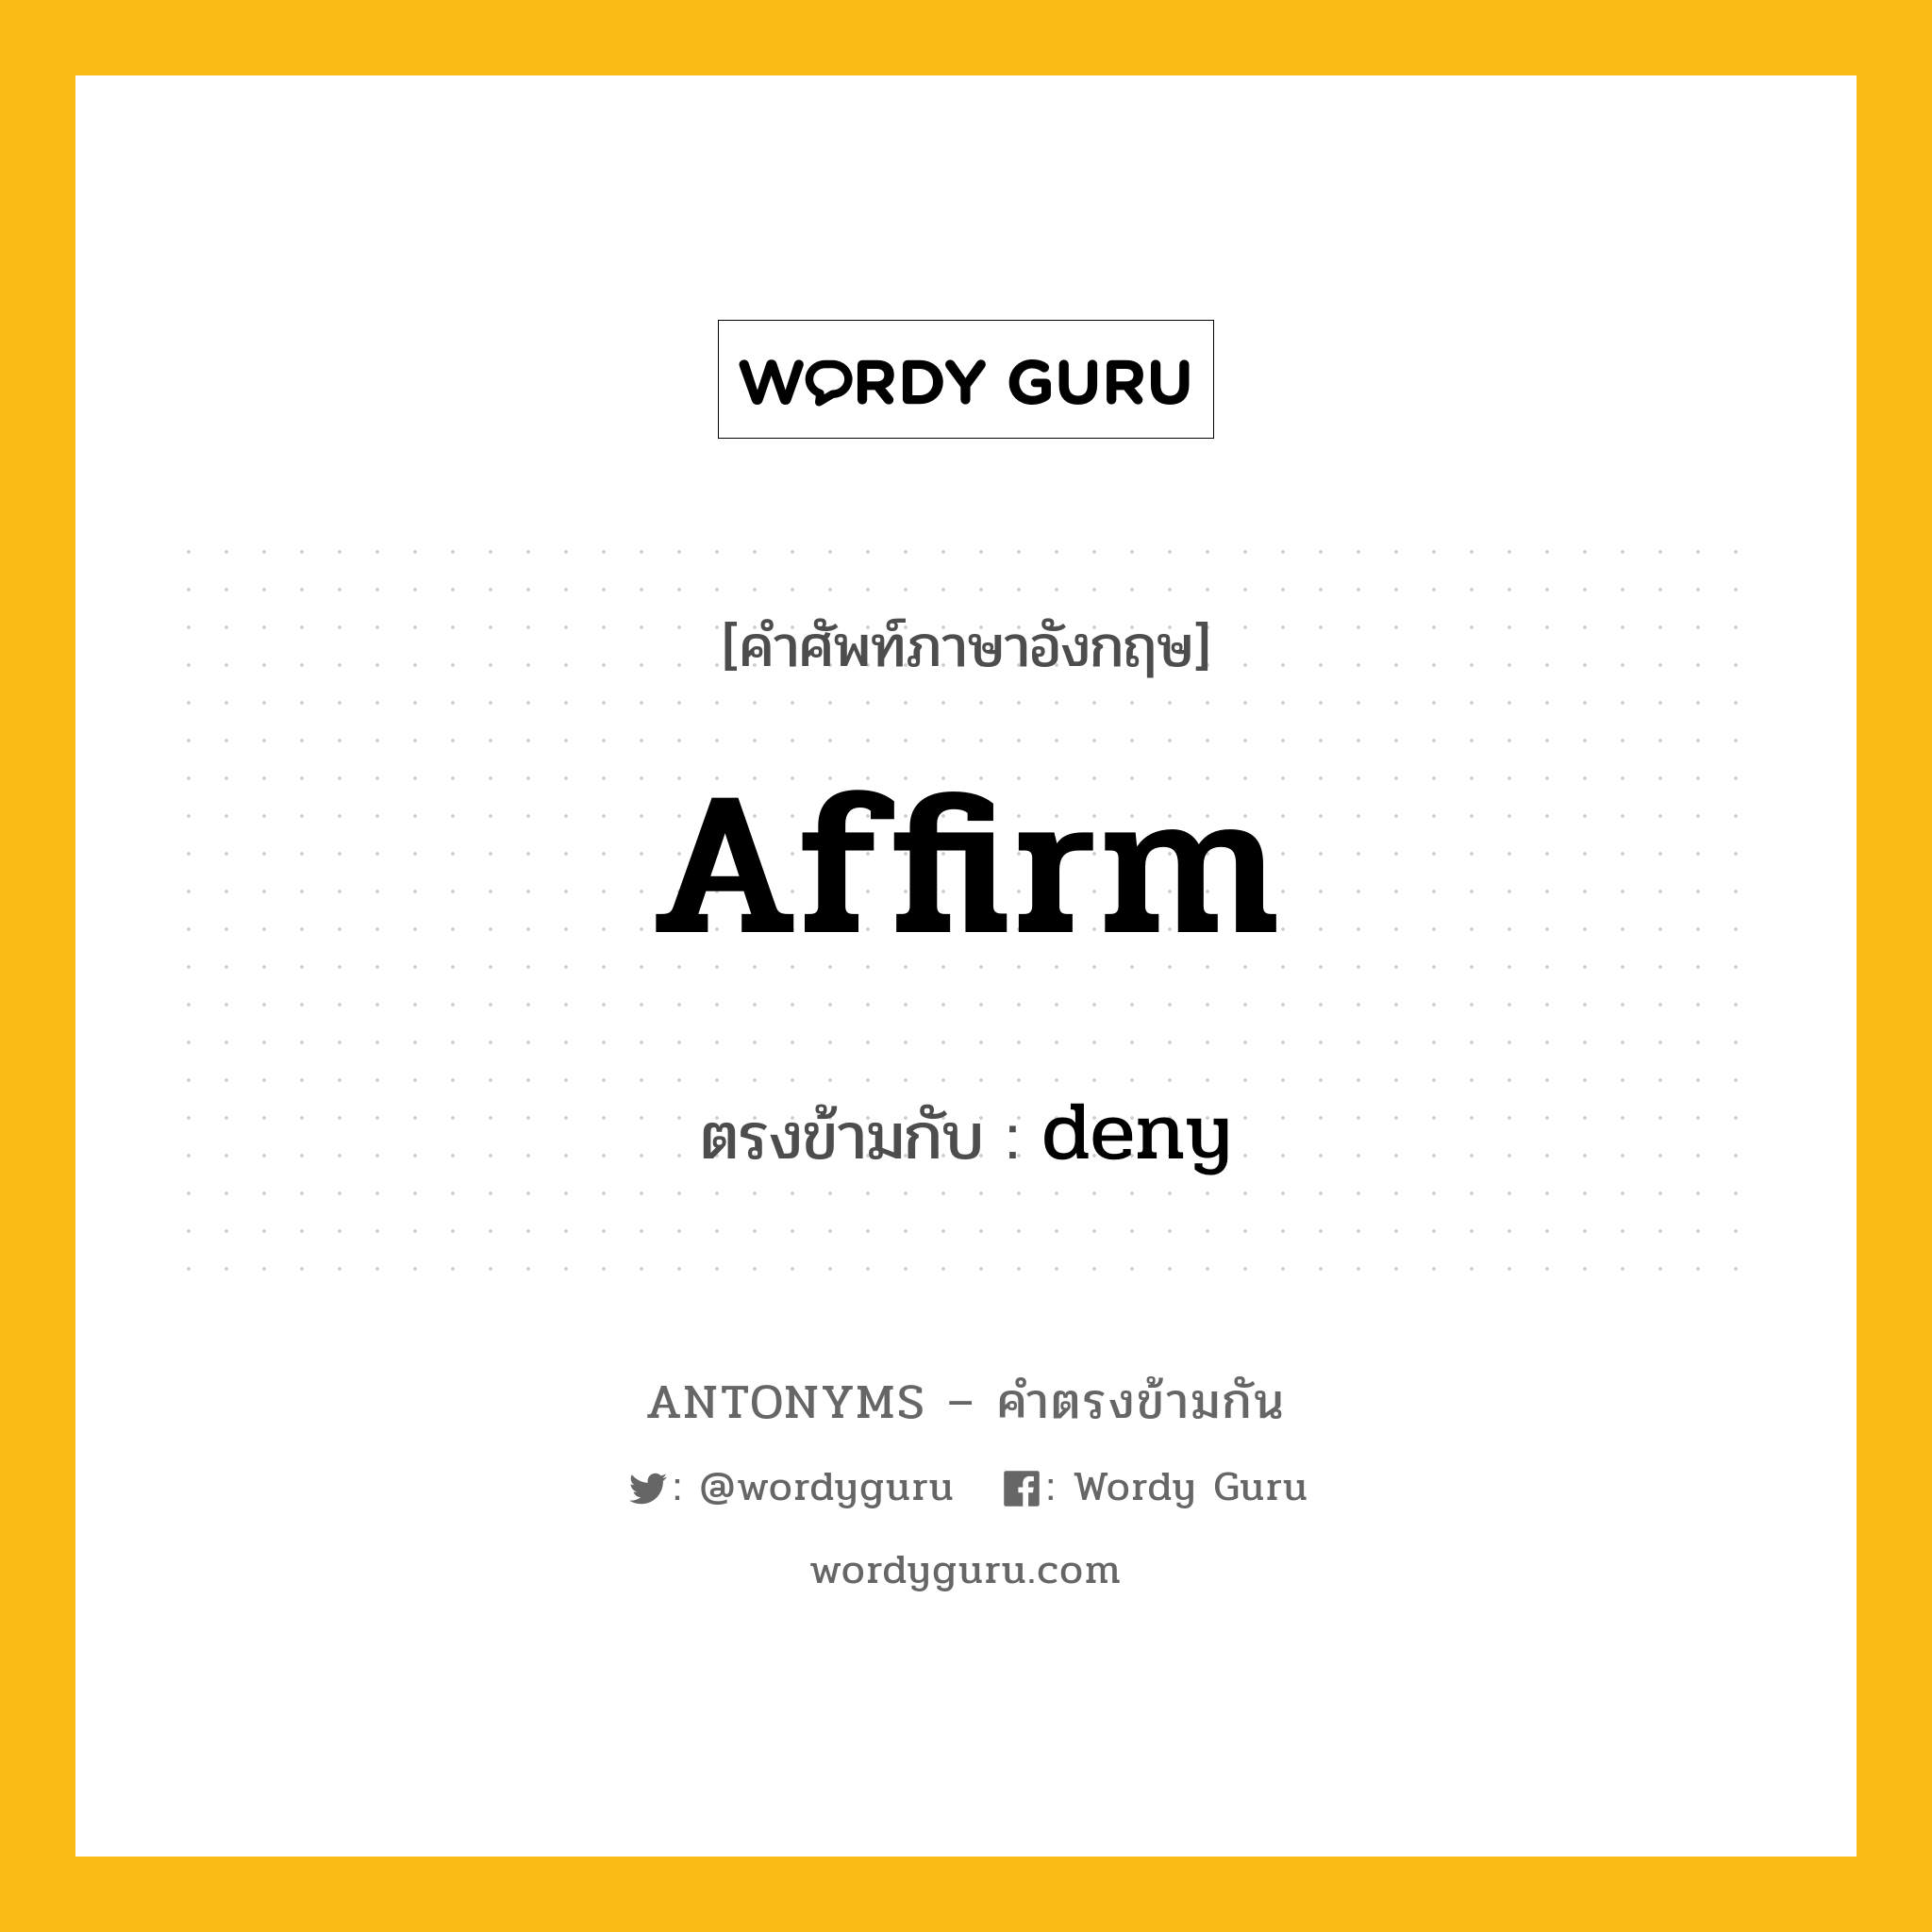 affirm เป็นคำตรงข้ามกับคำไหนบ้าง?, คำศัพท์ภาษาอังกฤษ affirm ตรงข้ามกับ deny หมวด deny